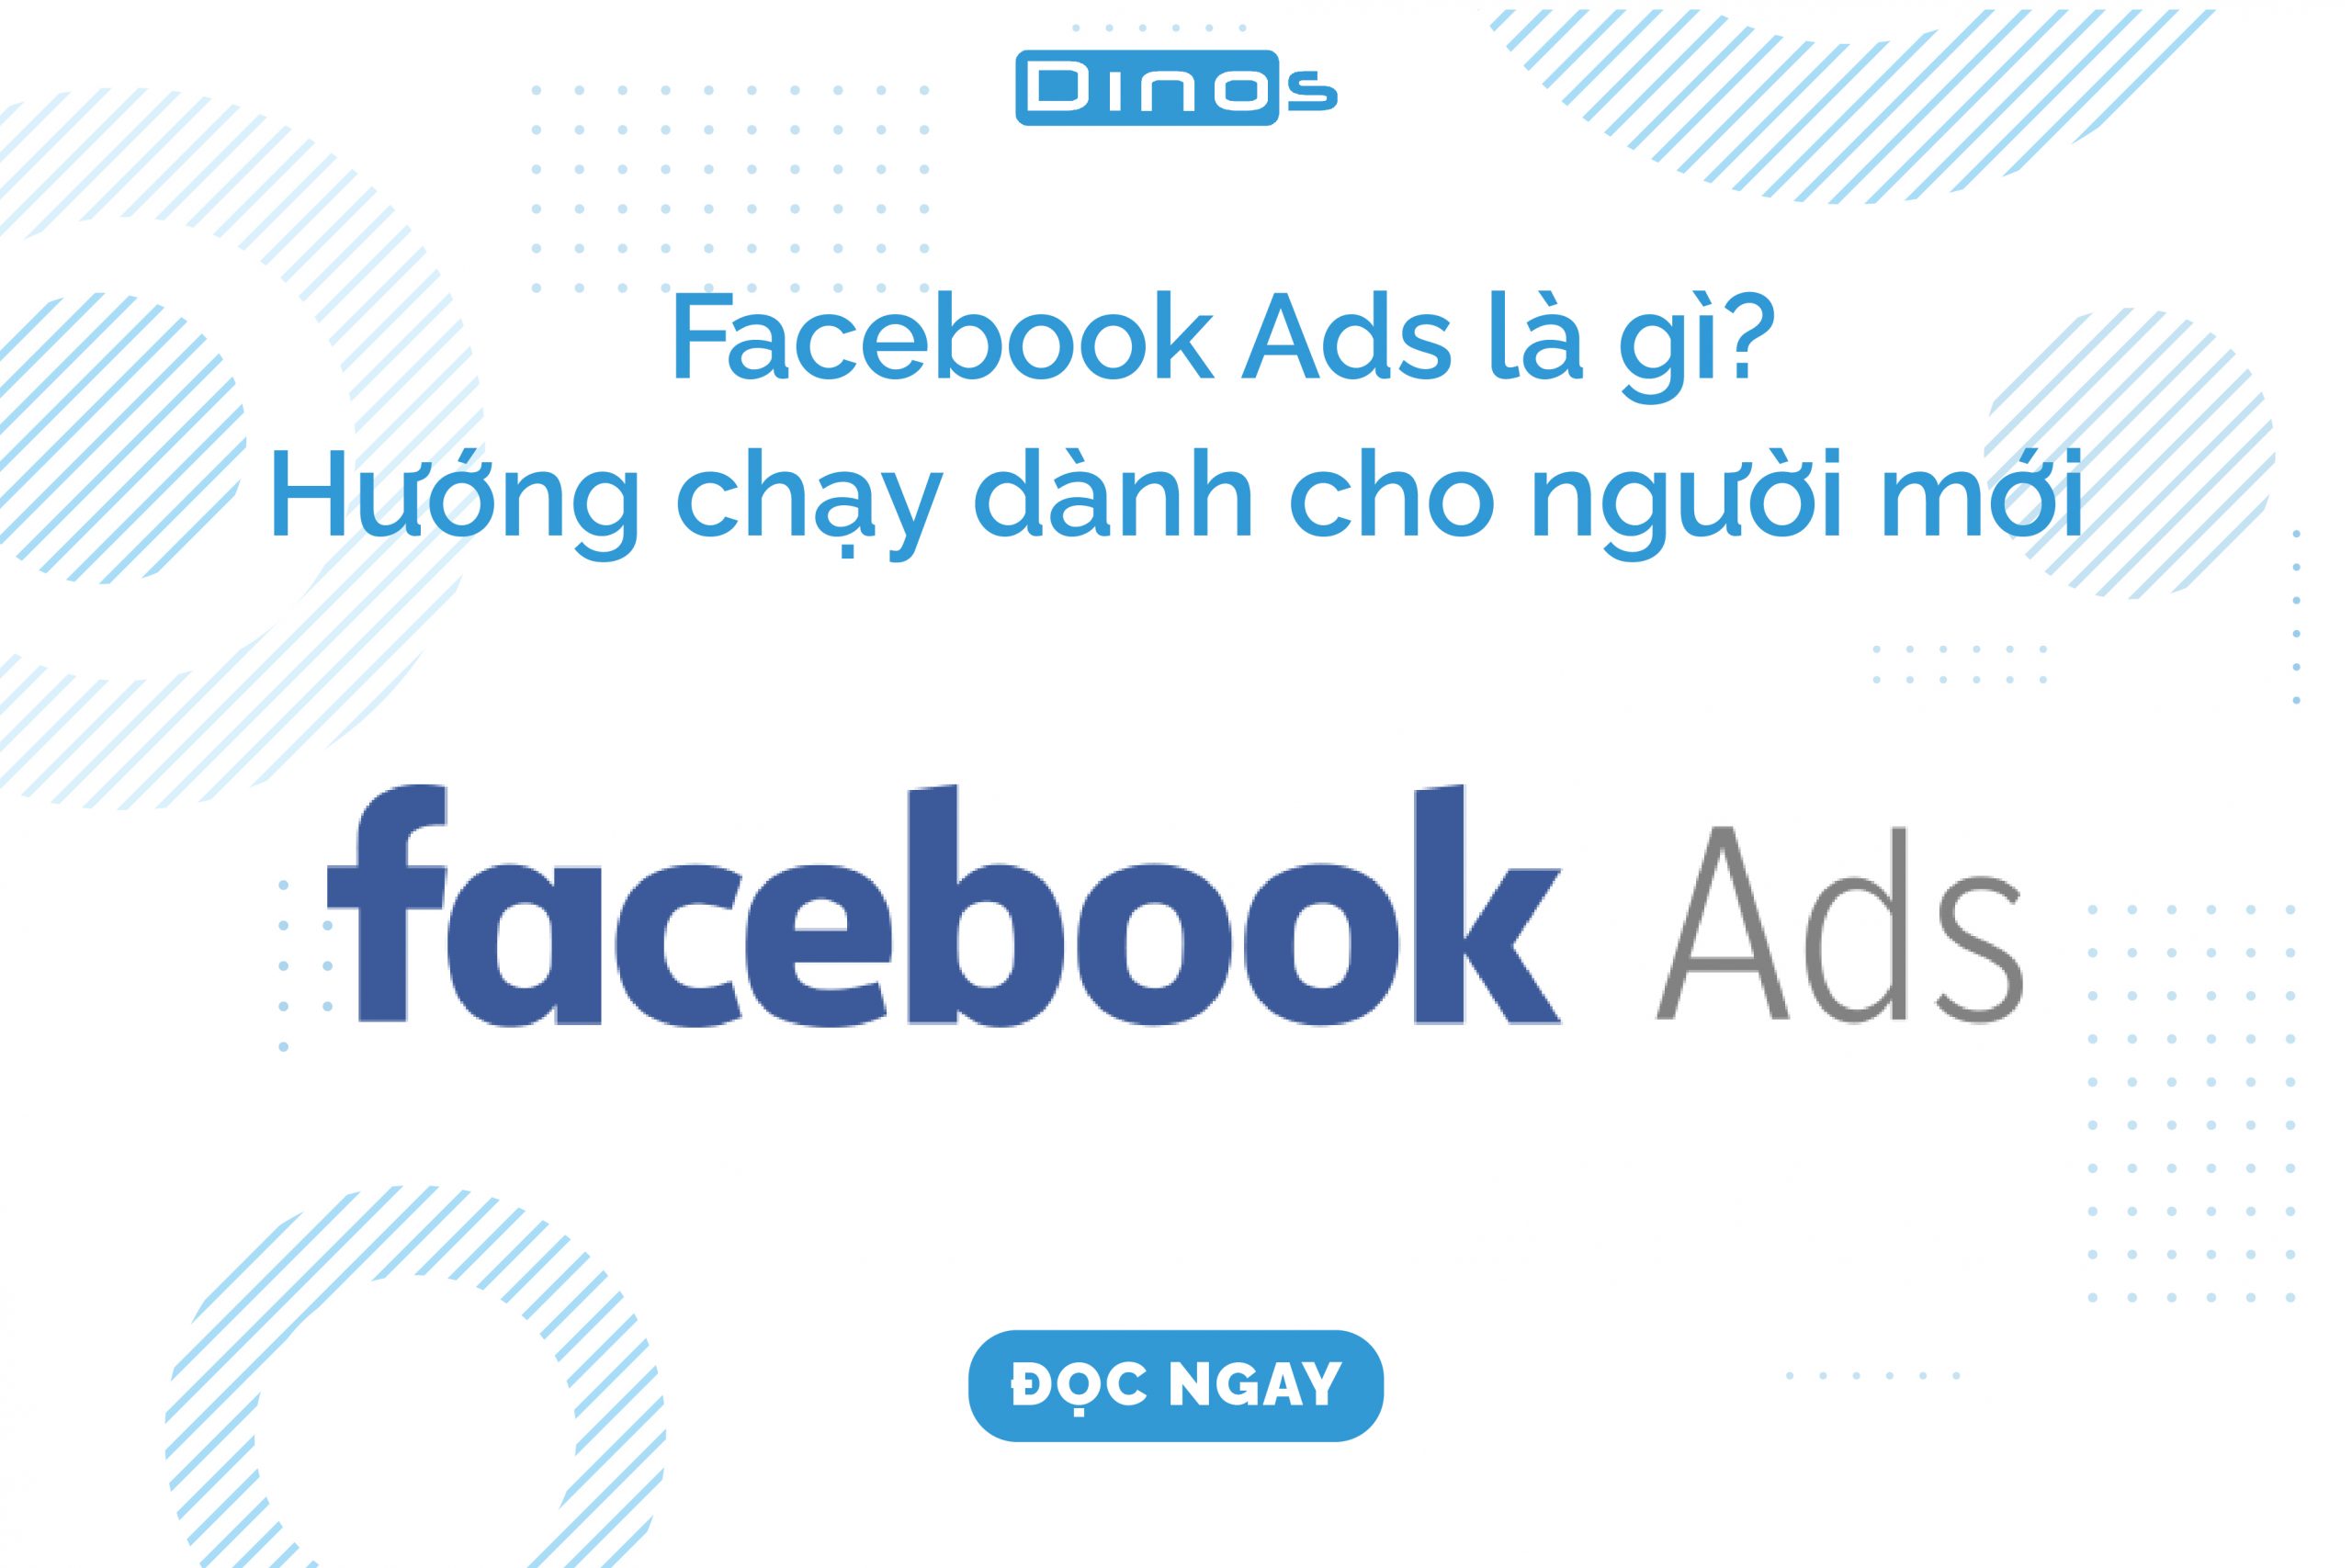 Facebook Ads là gì? 7 bước set-up Facebook Ads cơ bản cho người mới